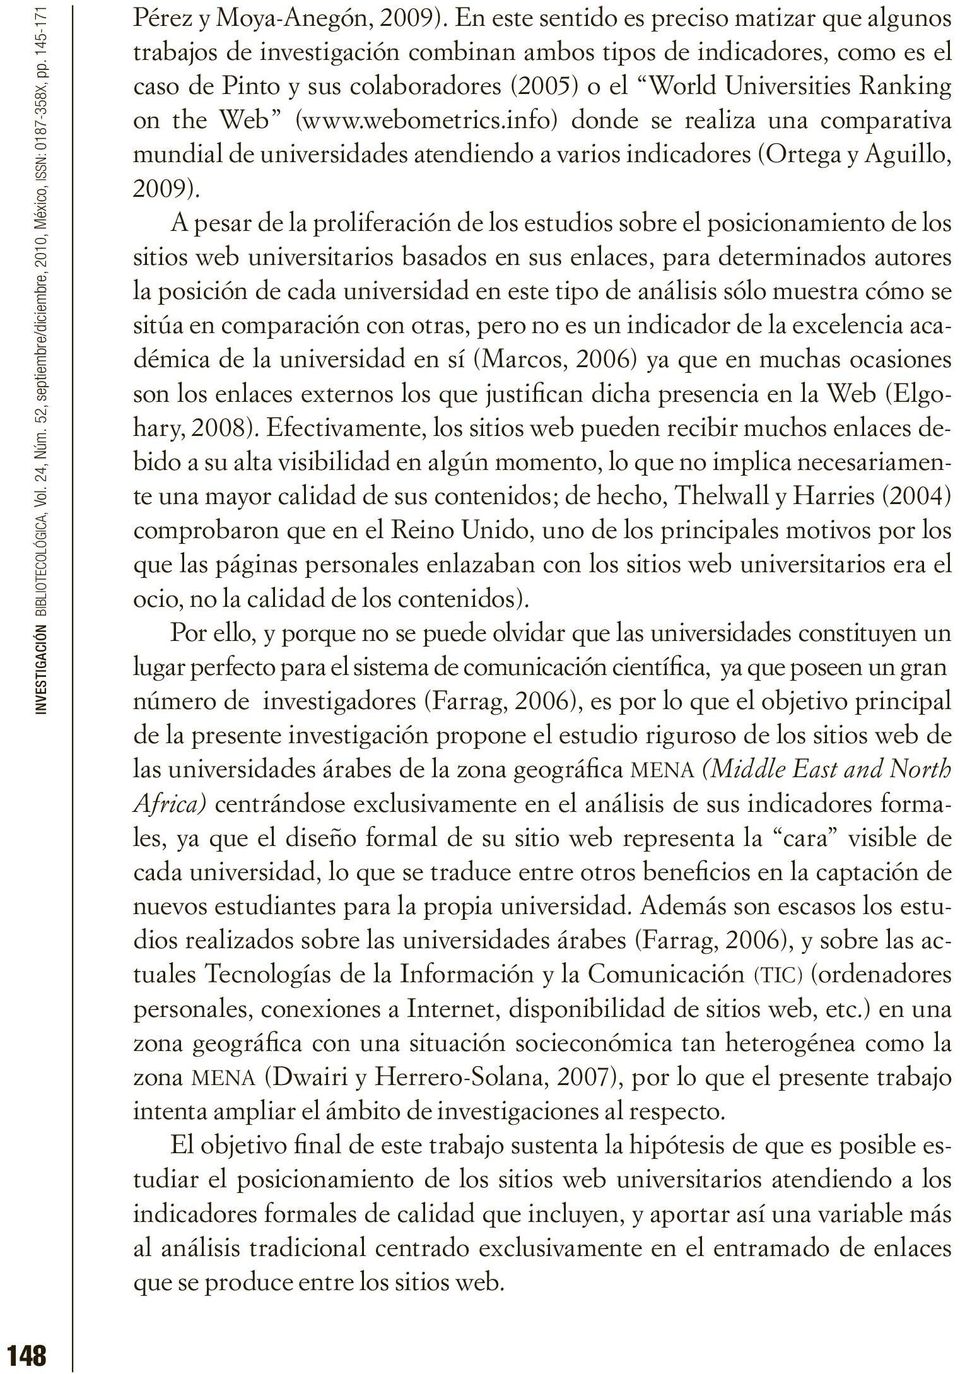 the Web (www.webometrics.info) donde se realiza una comparativa mundial de universidades atendiendo a varios indicadores (Ortega y Aguillo, 2009).